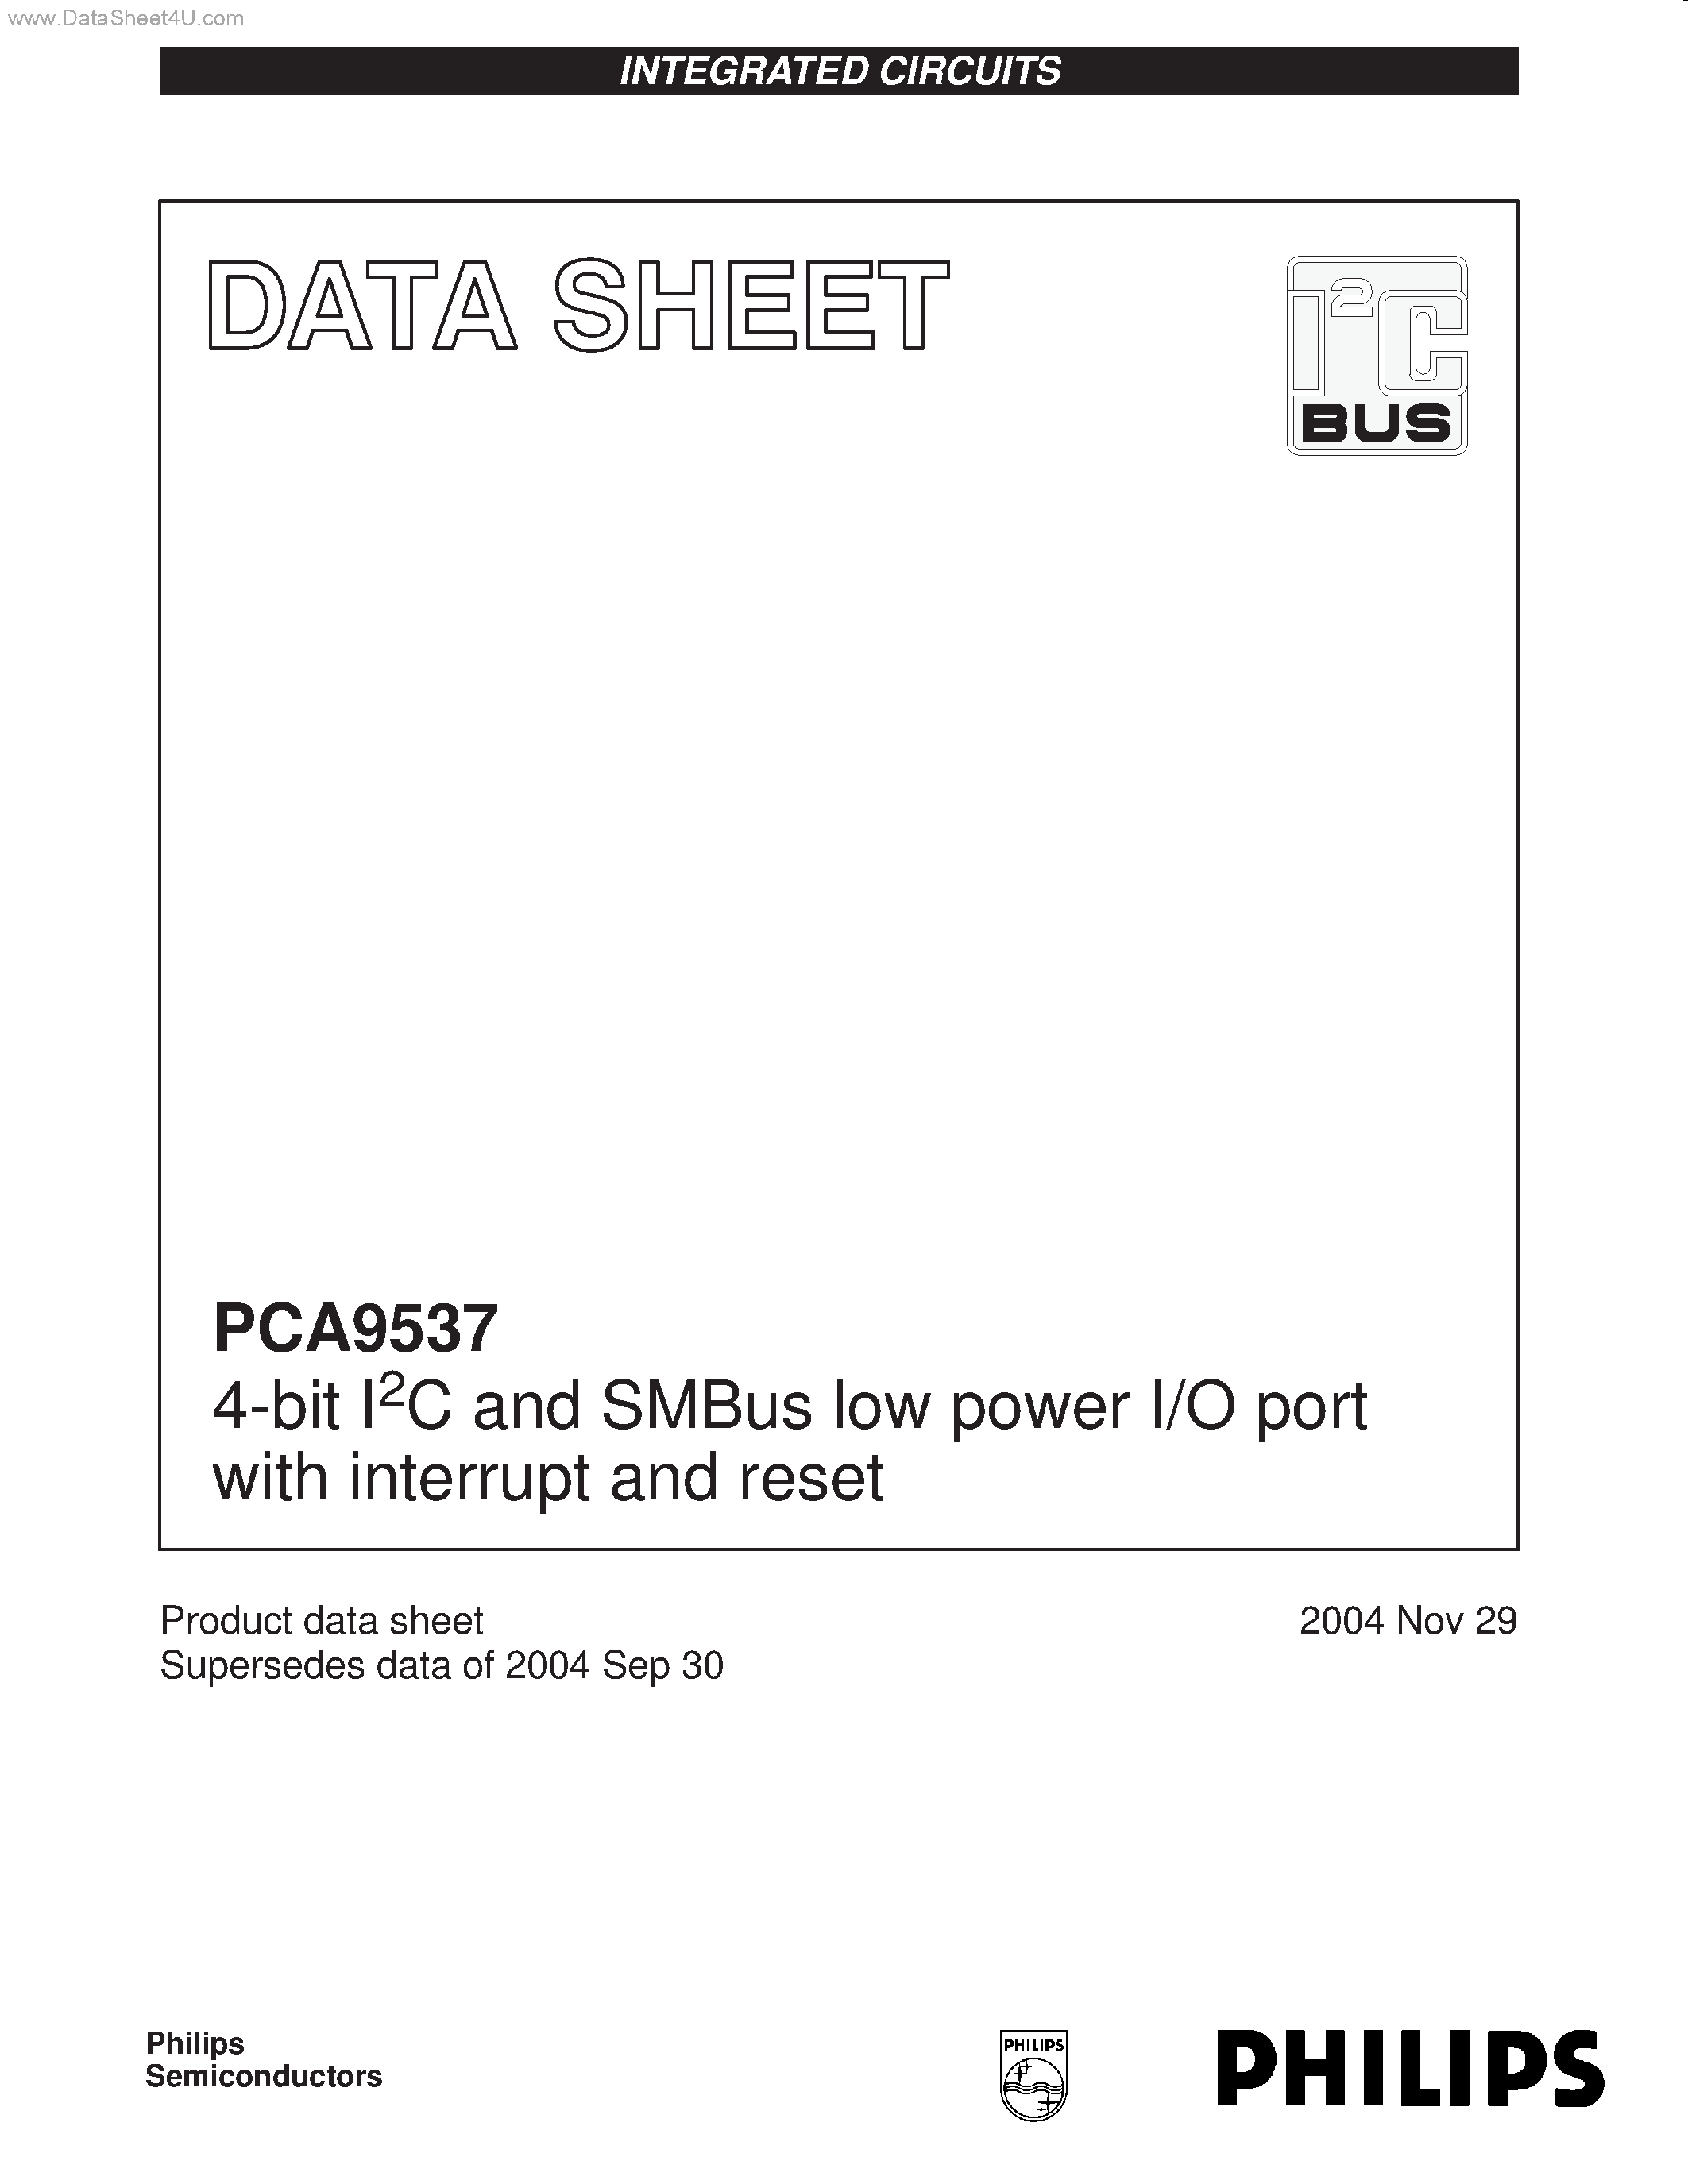 Даташит PCA9537 - 4-bit I2C and SMBus low power I/O port страница 1